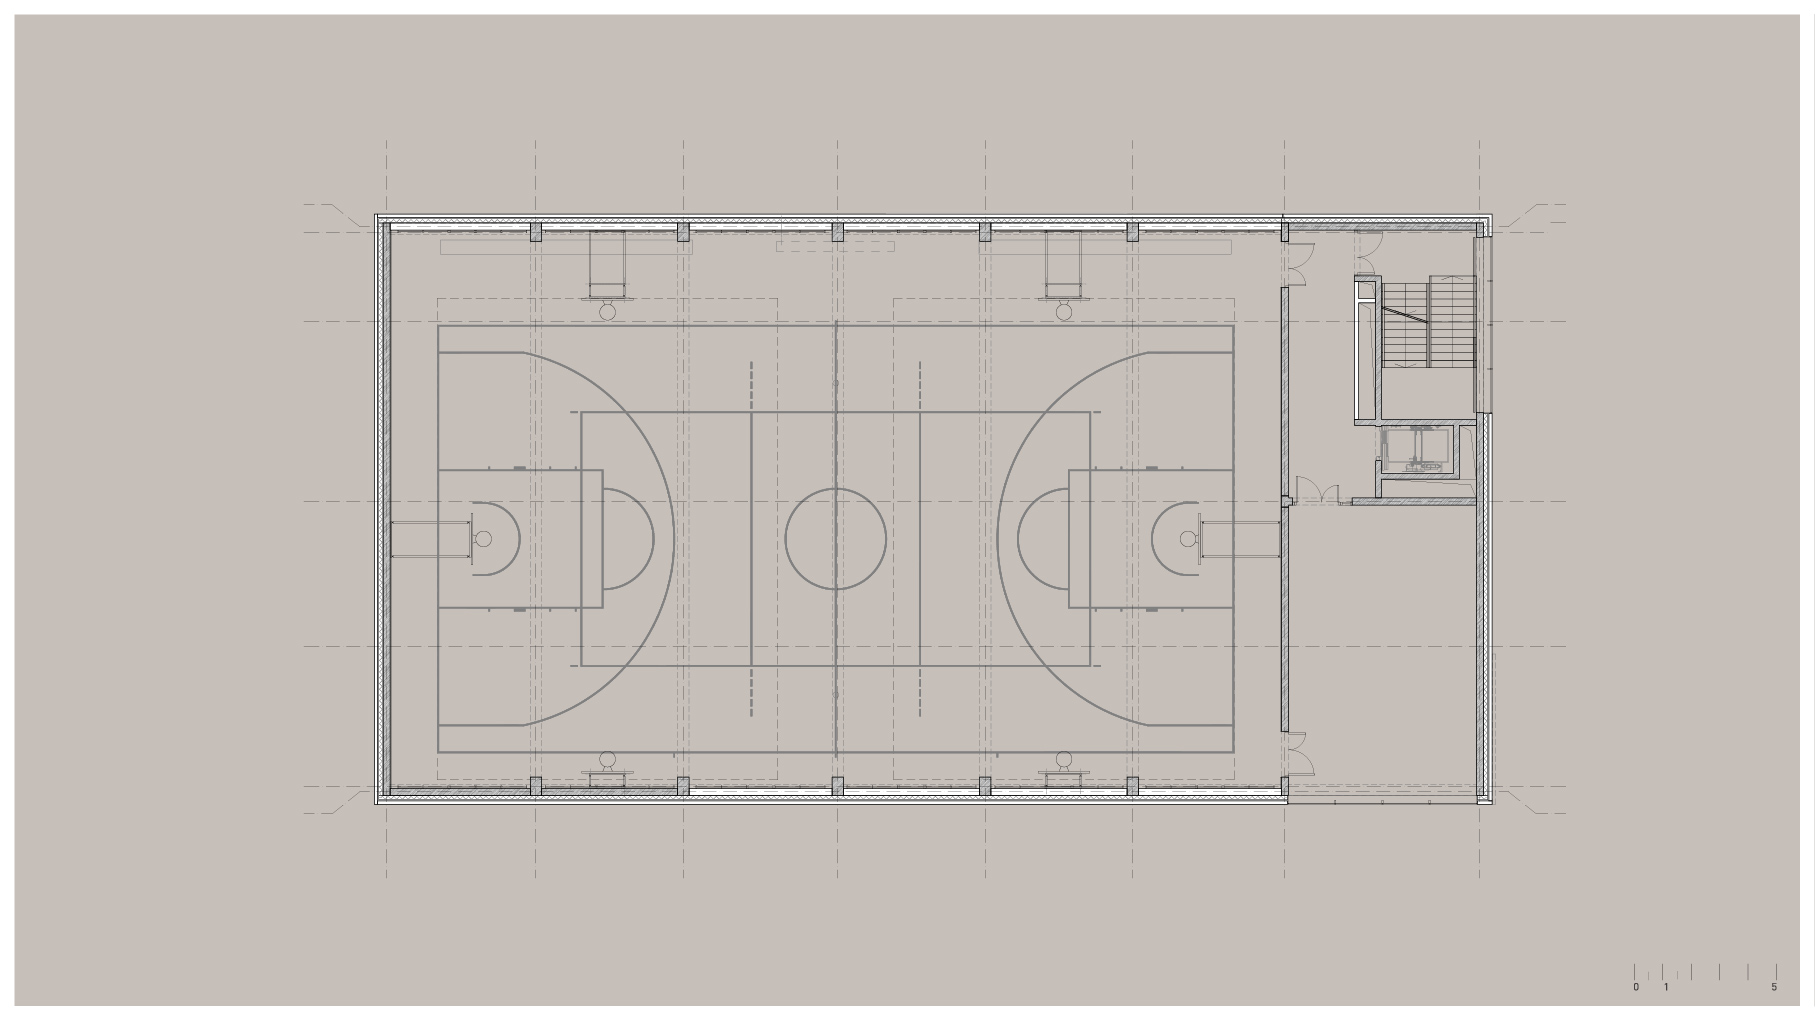 Hybrid sport complex with fencing hall in Wrocław - floor plan